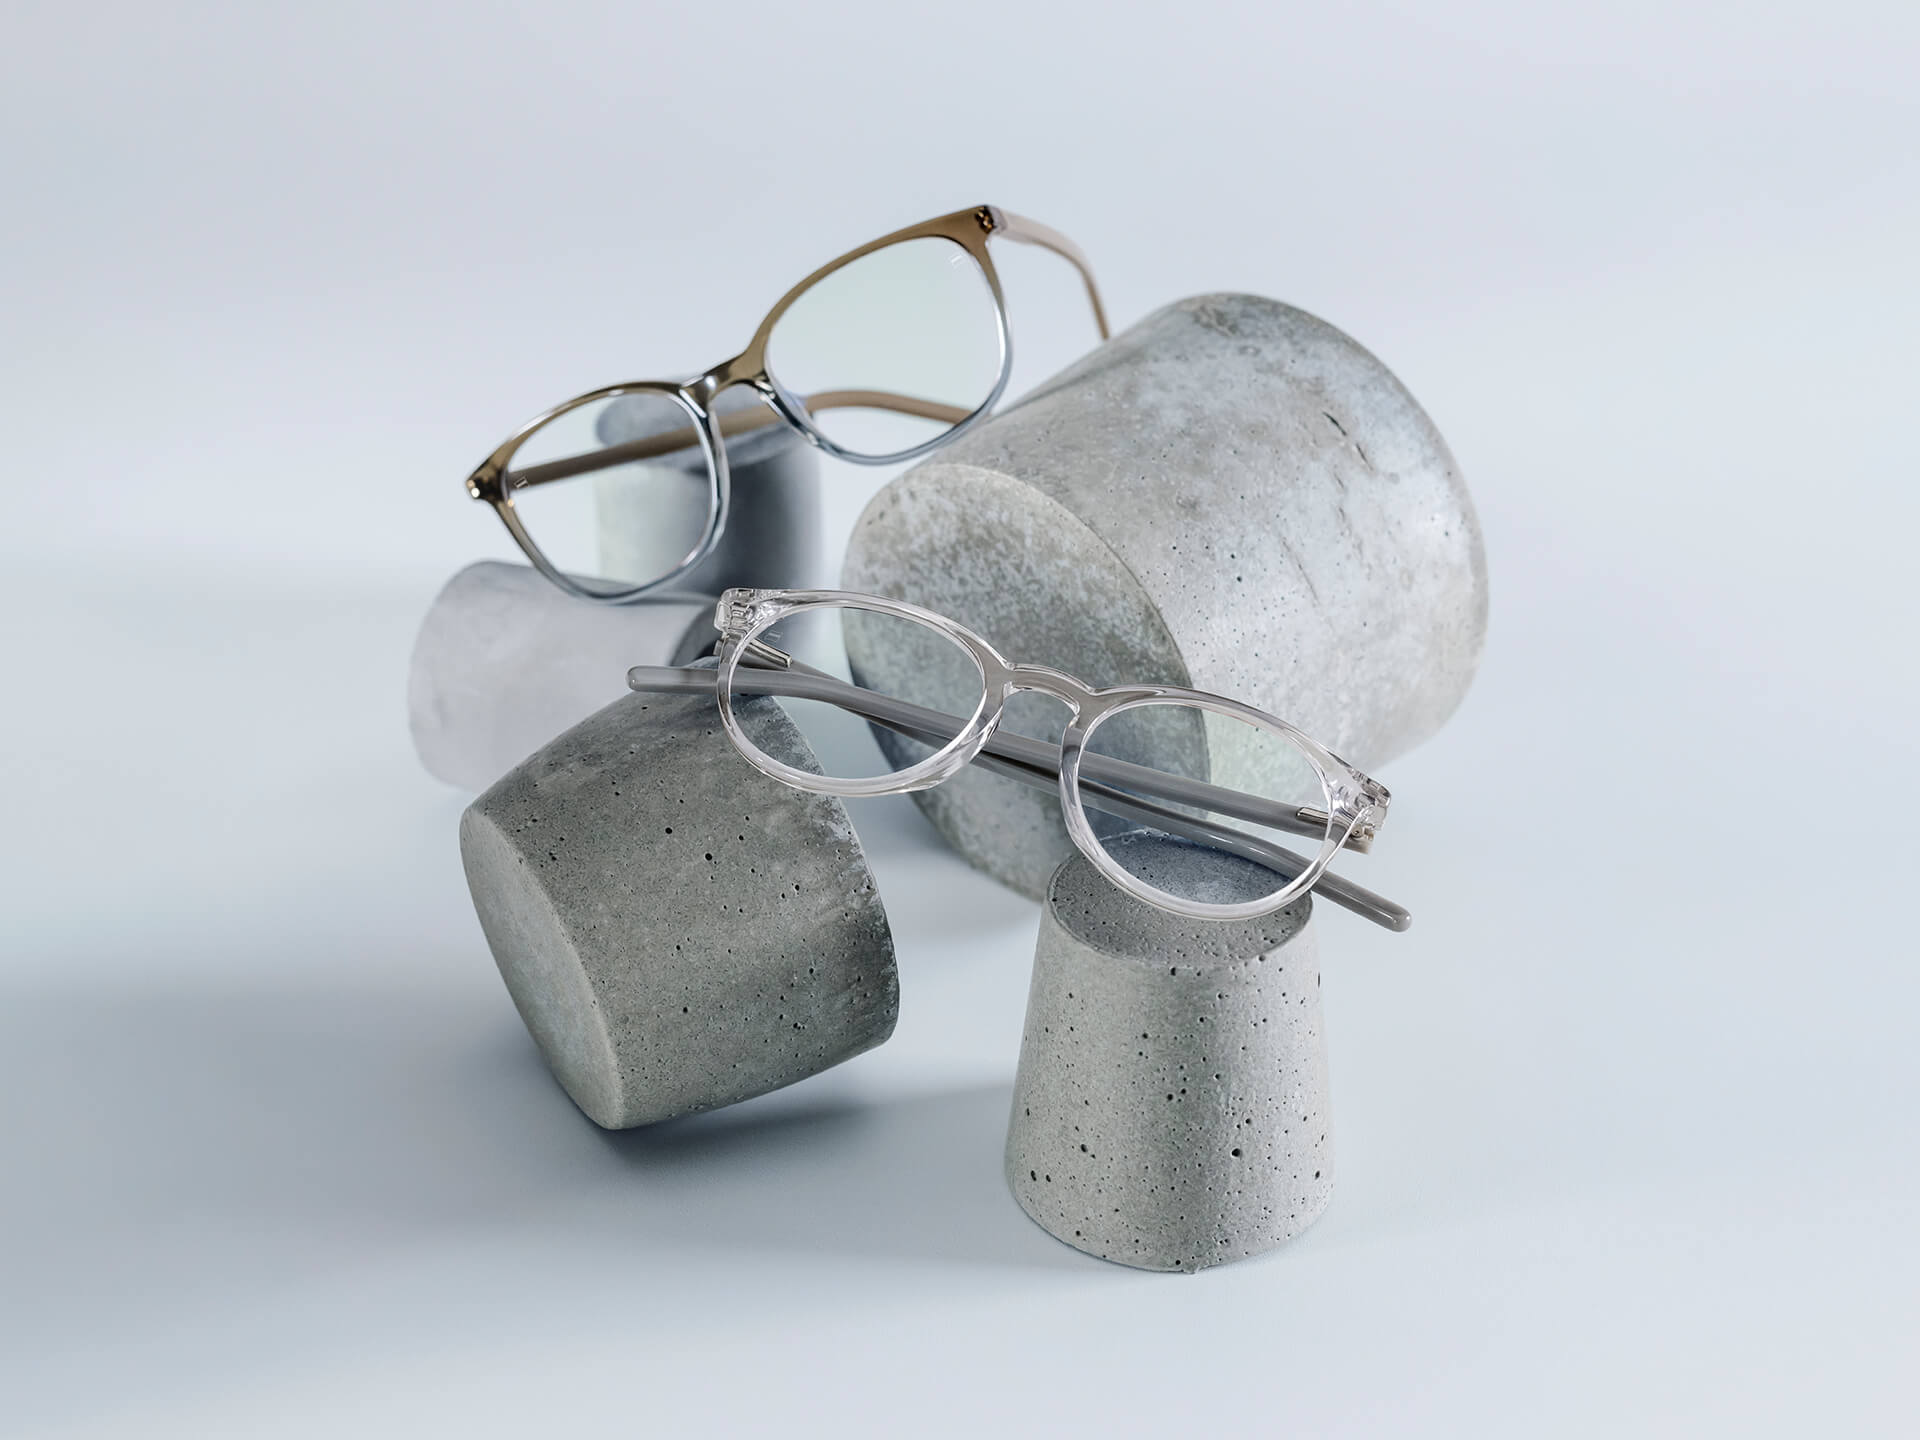 具有 DuraVision® Chrome 鍍膜的蔡司眼鏡放置於各種尺寸的石座上。